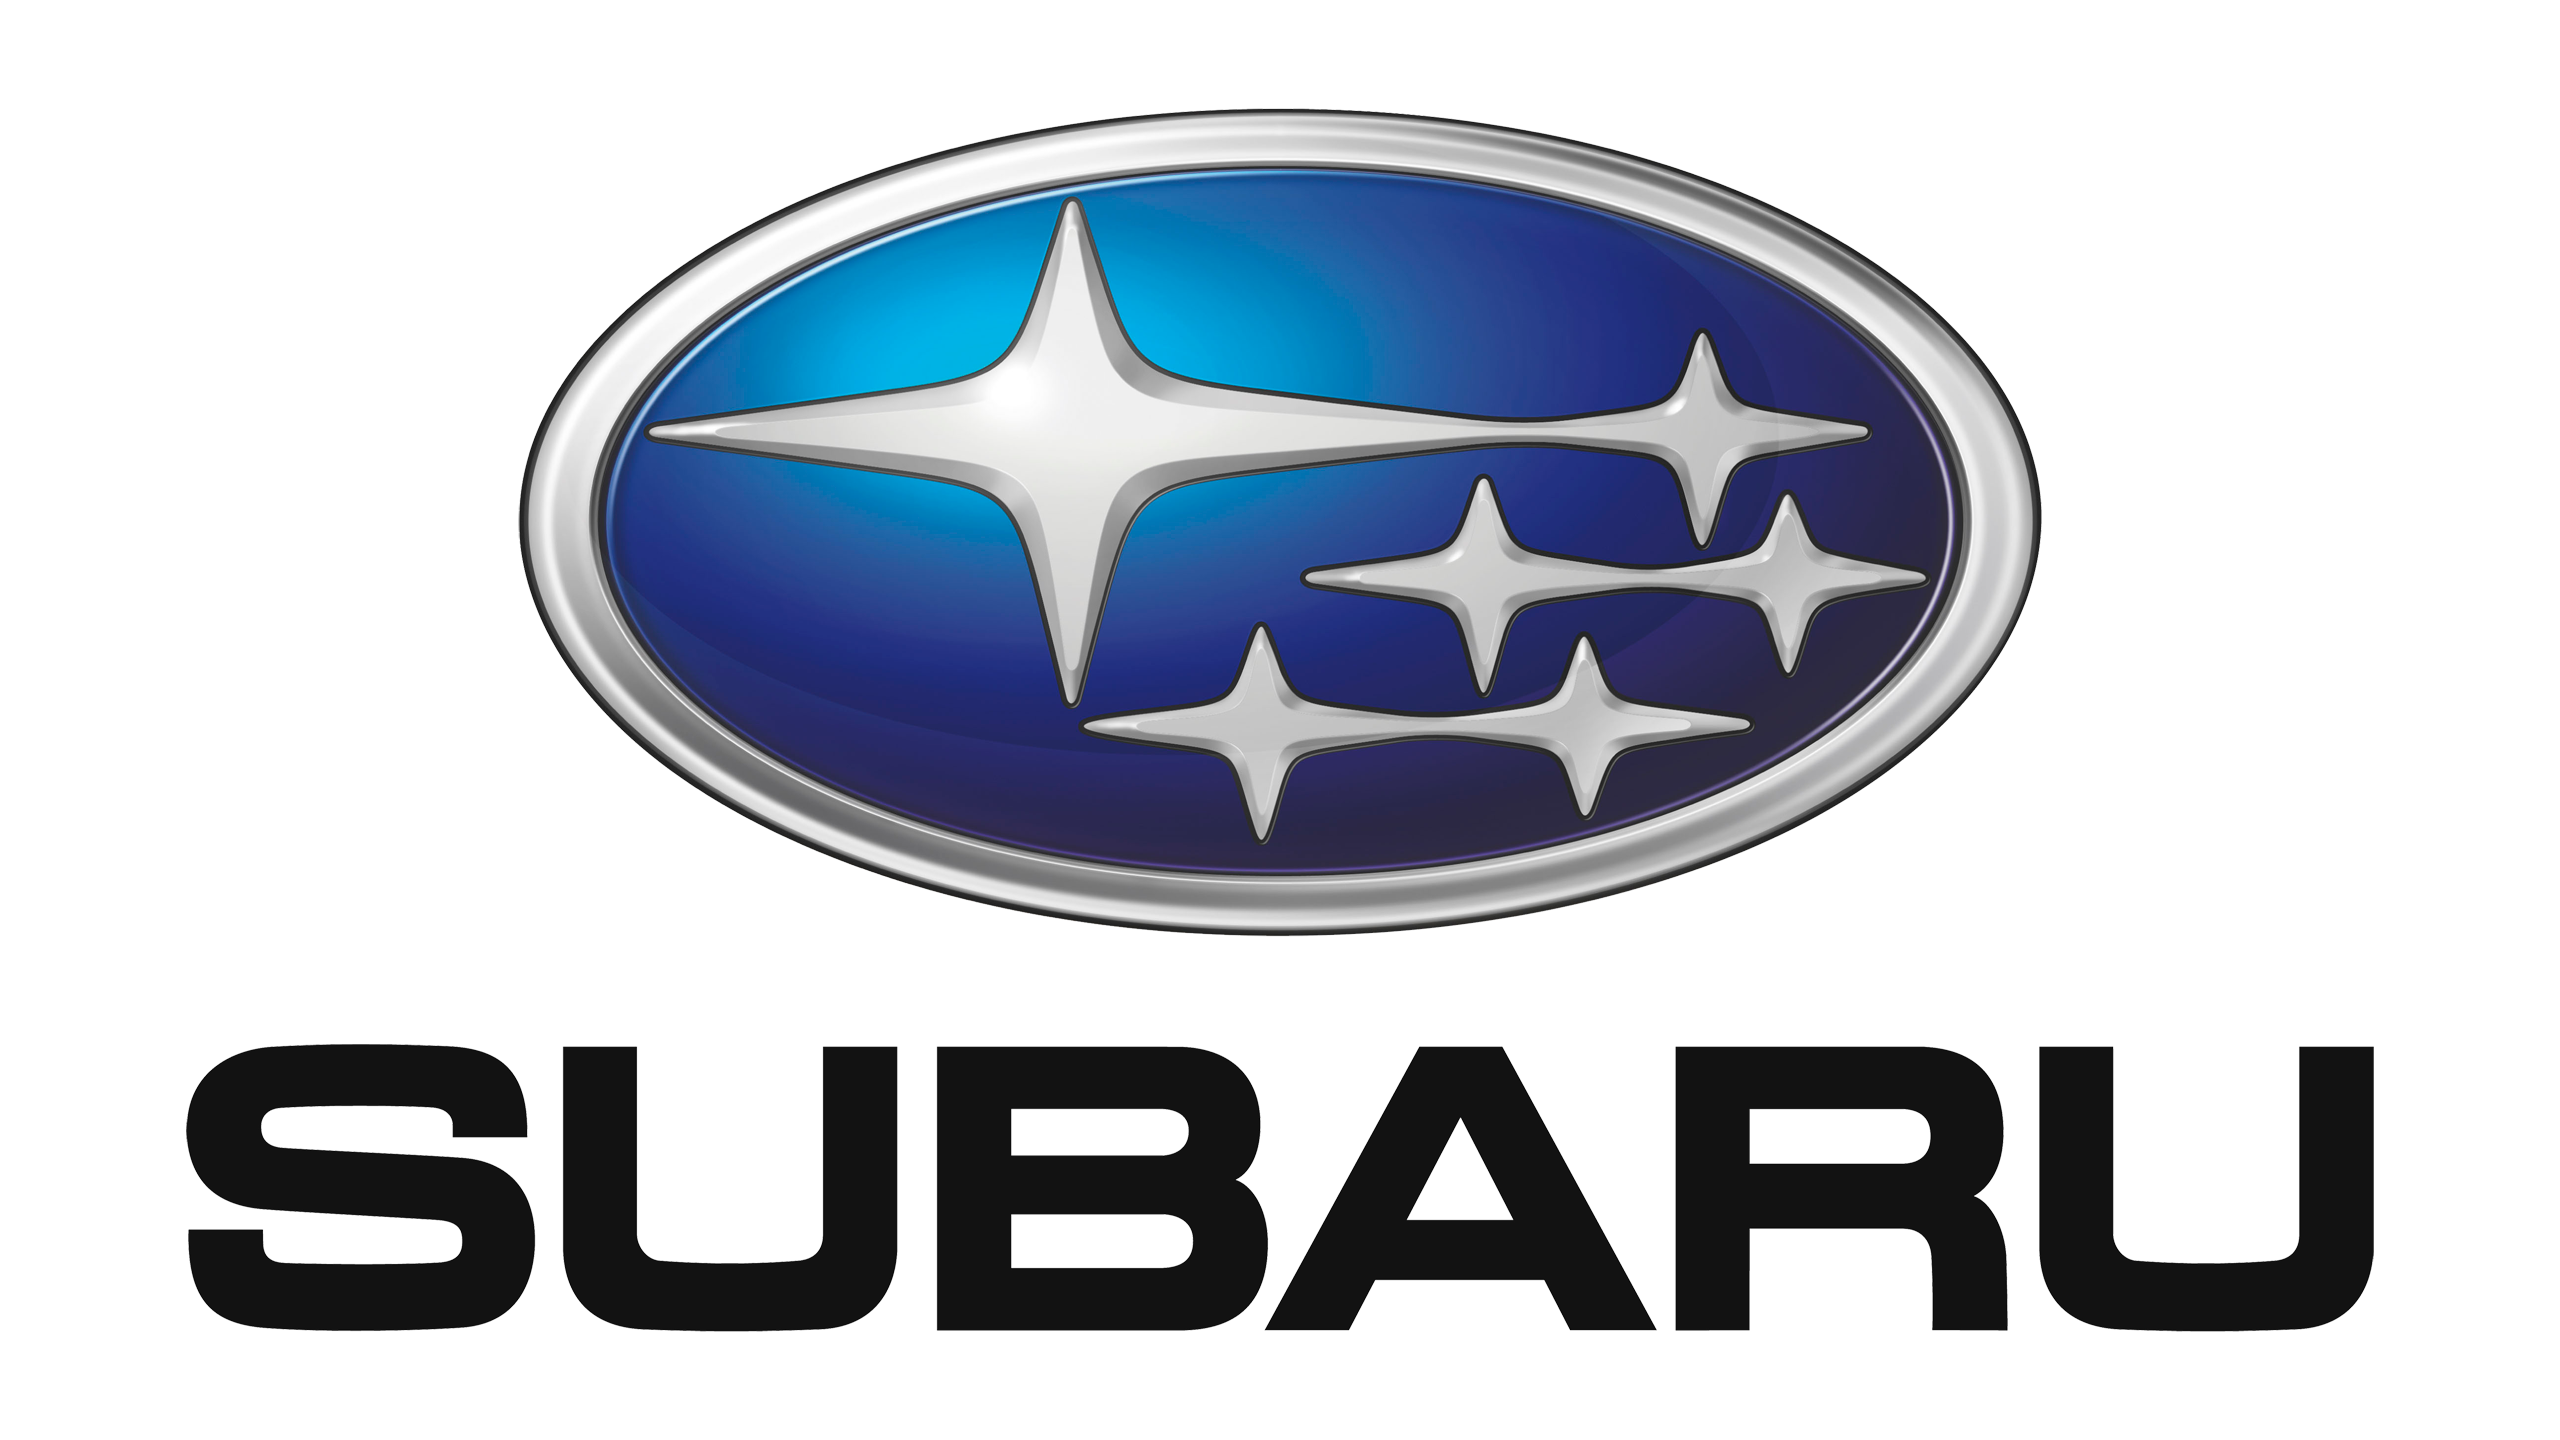 Subaru-logo-2003-2560x1440-1.png